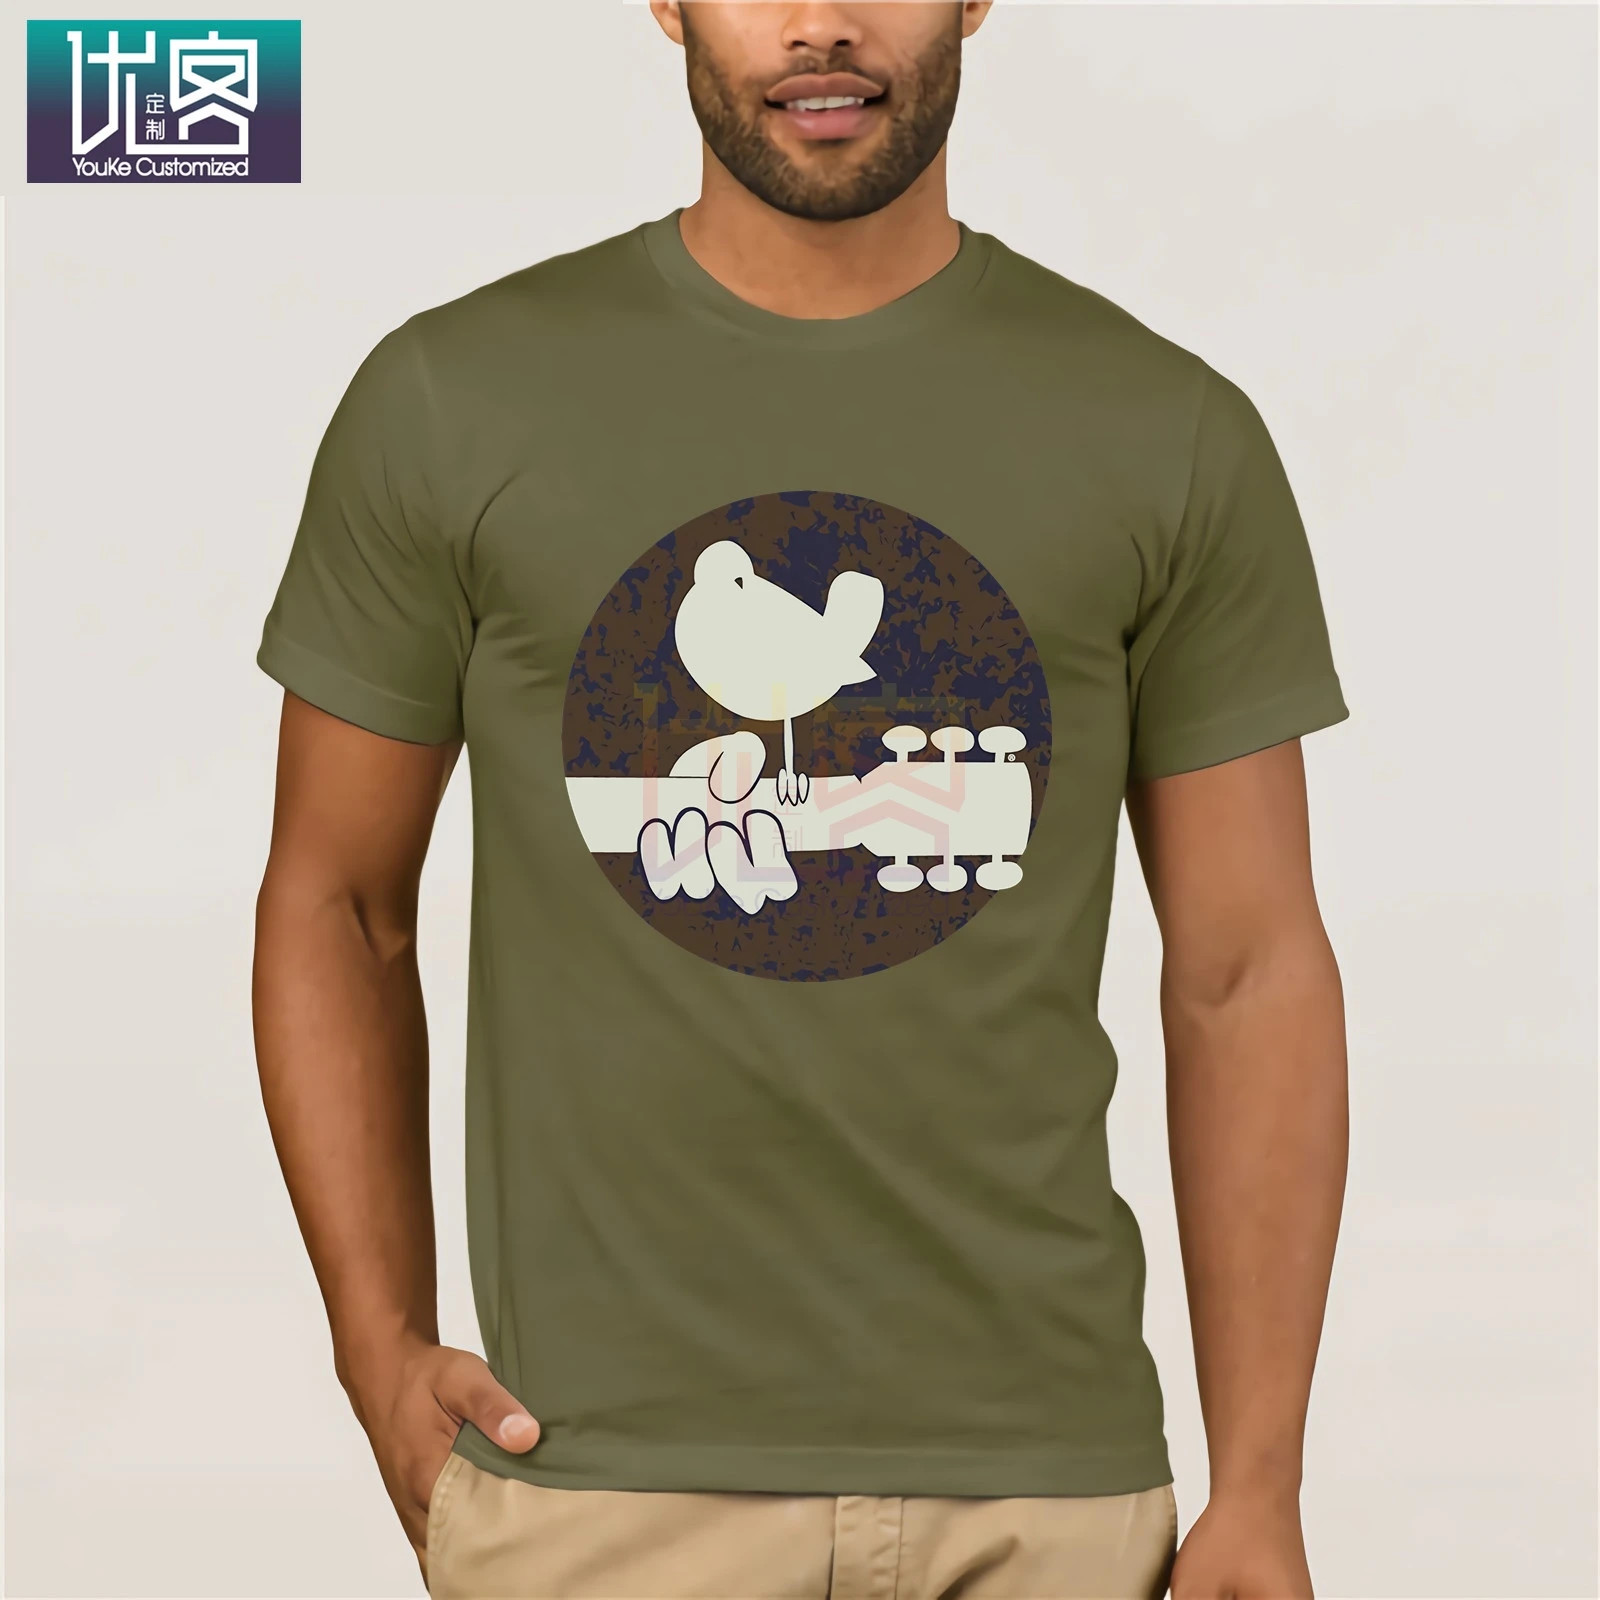 Woodstock выгорающая футболка с юмором 100% хлопковые топы топ графическим рисунком и